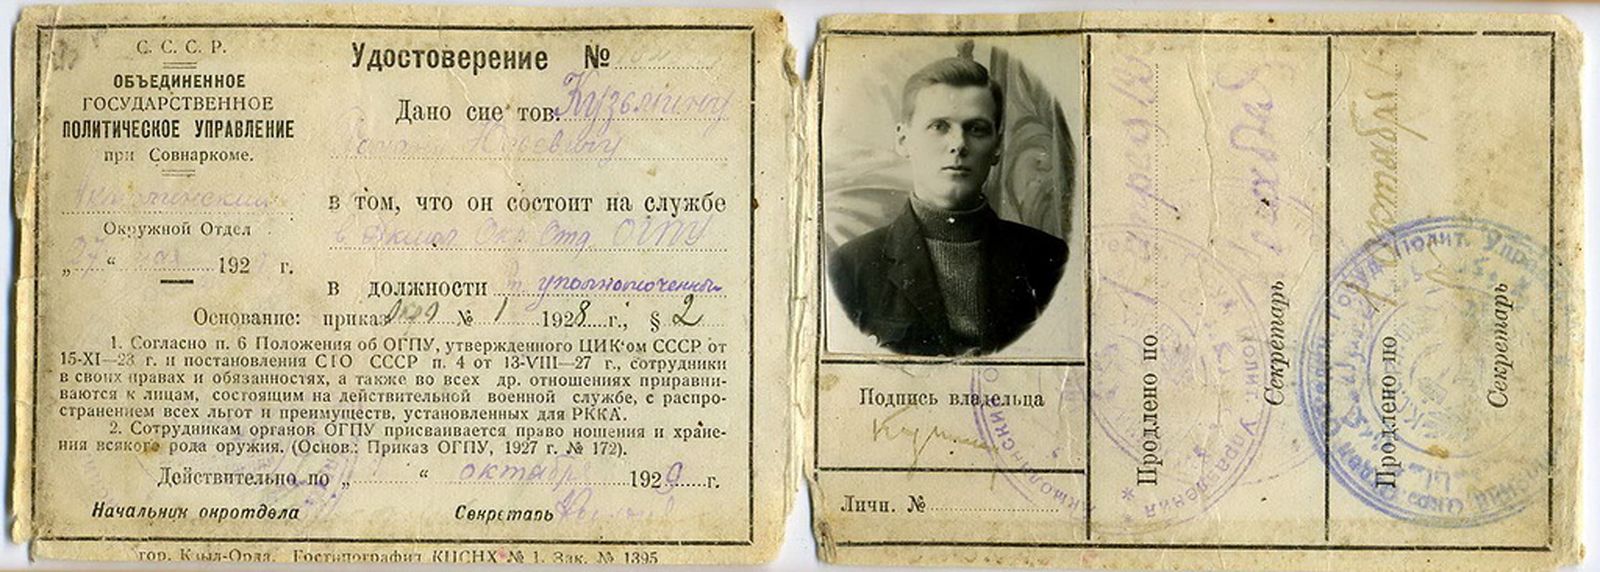 Фамилия николая васильевича при рождении. Старые документы. Документы ОГПУ. Документы о раскулаченных.